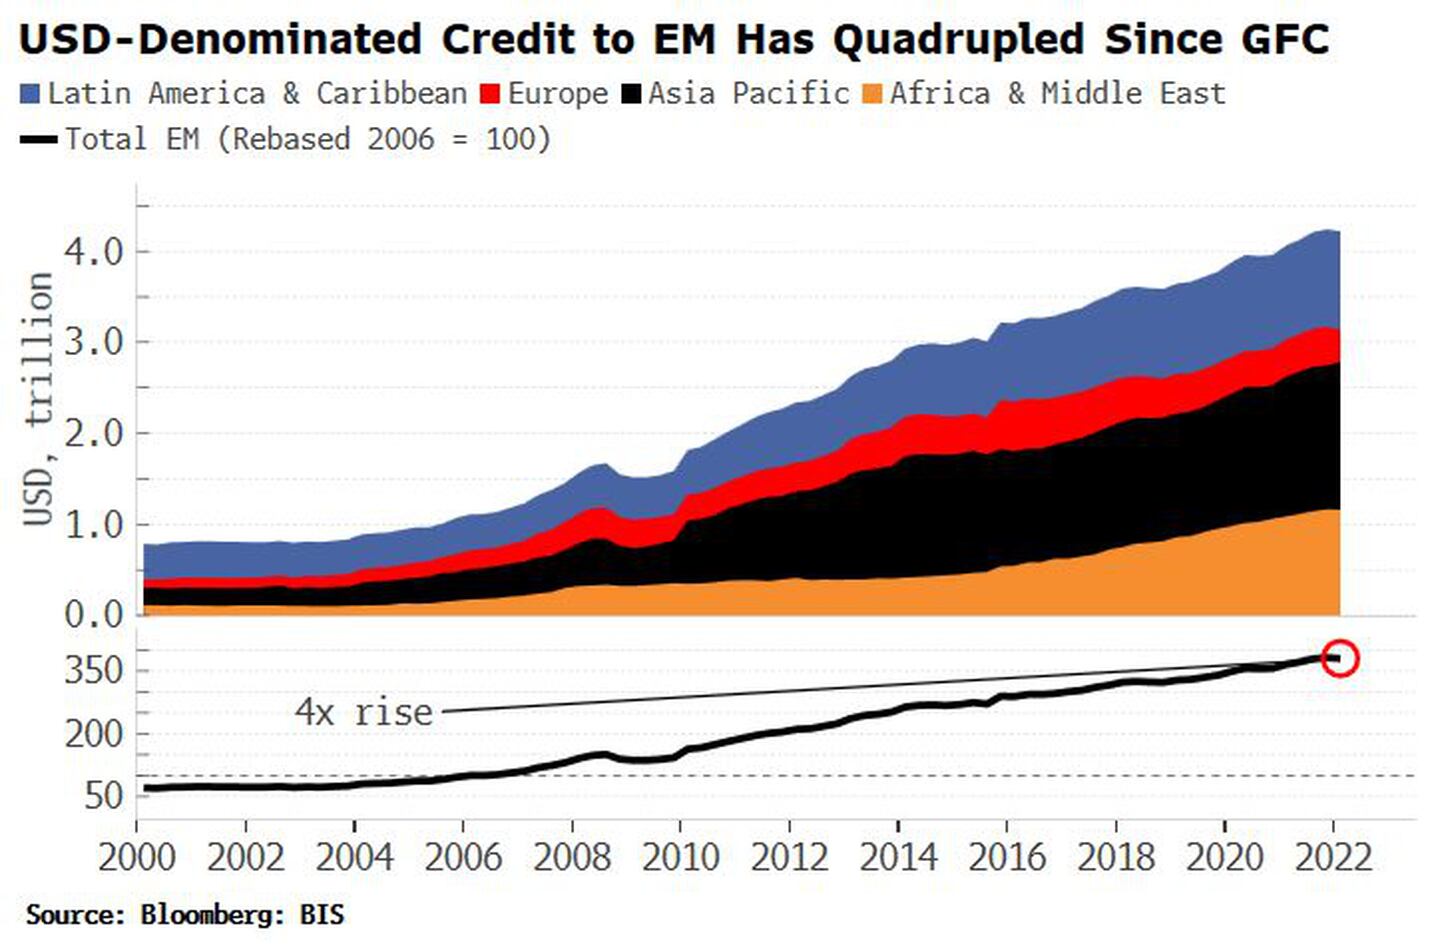 Crédito denominado en dólares a los mercados emergentes se ha cuadruplicado desde la crisis financiera globaldfd